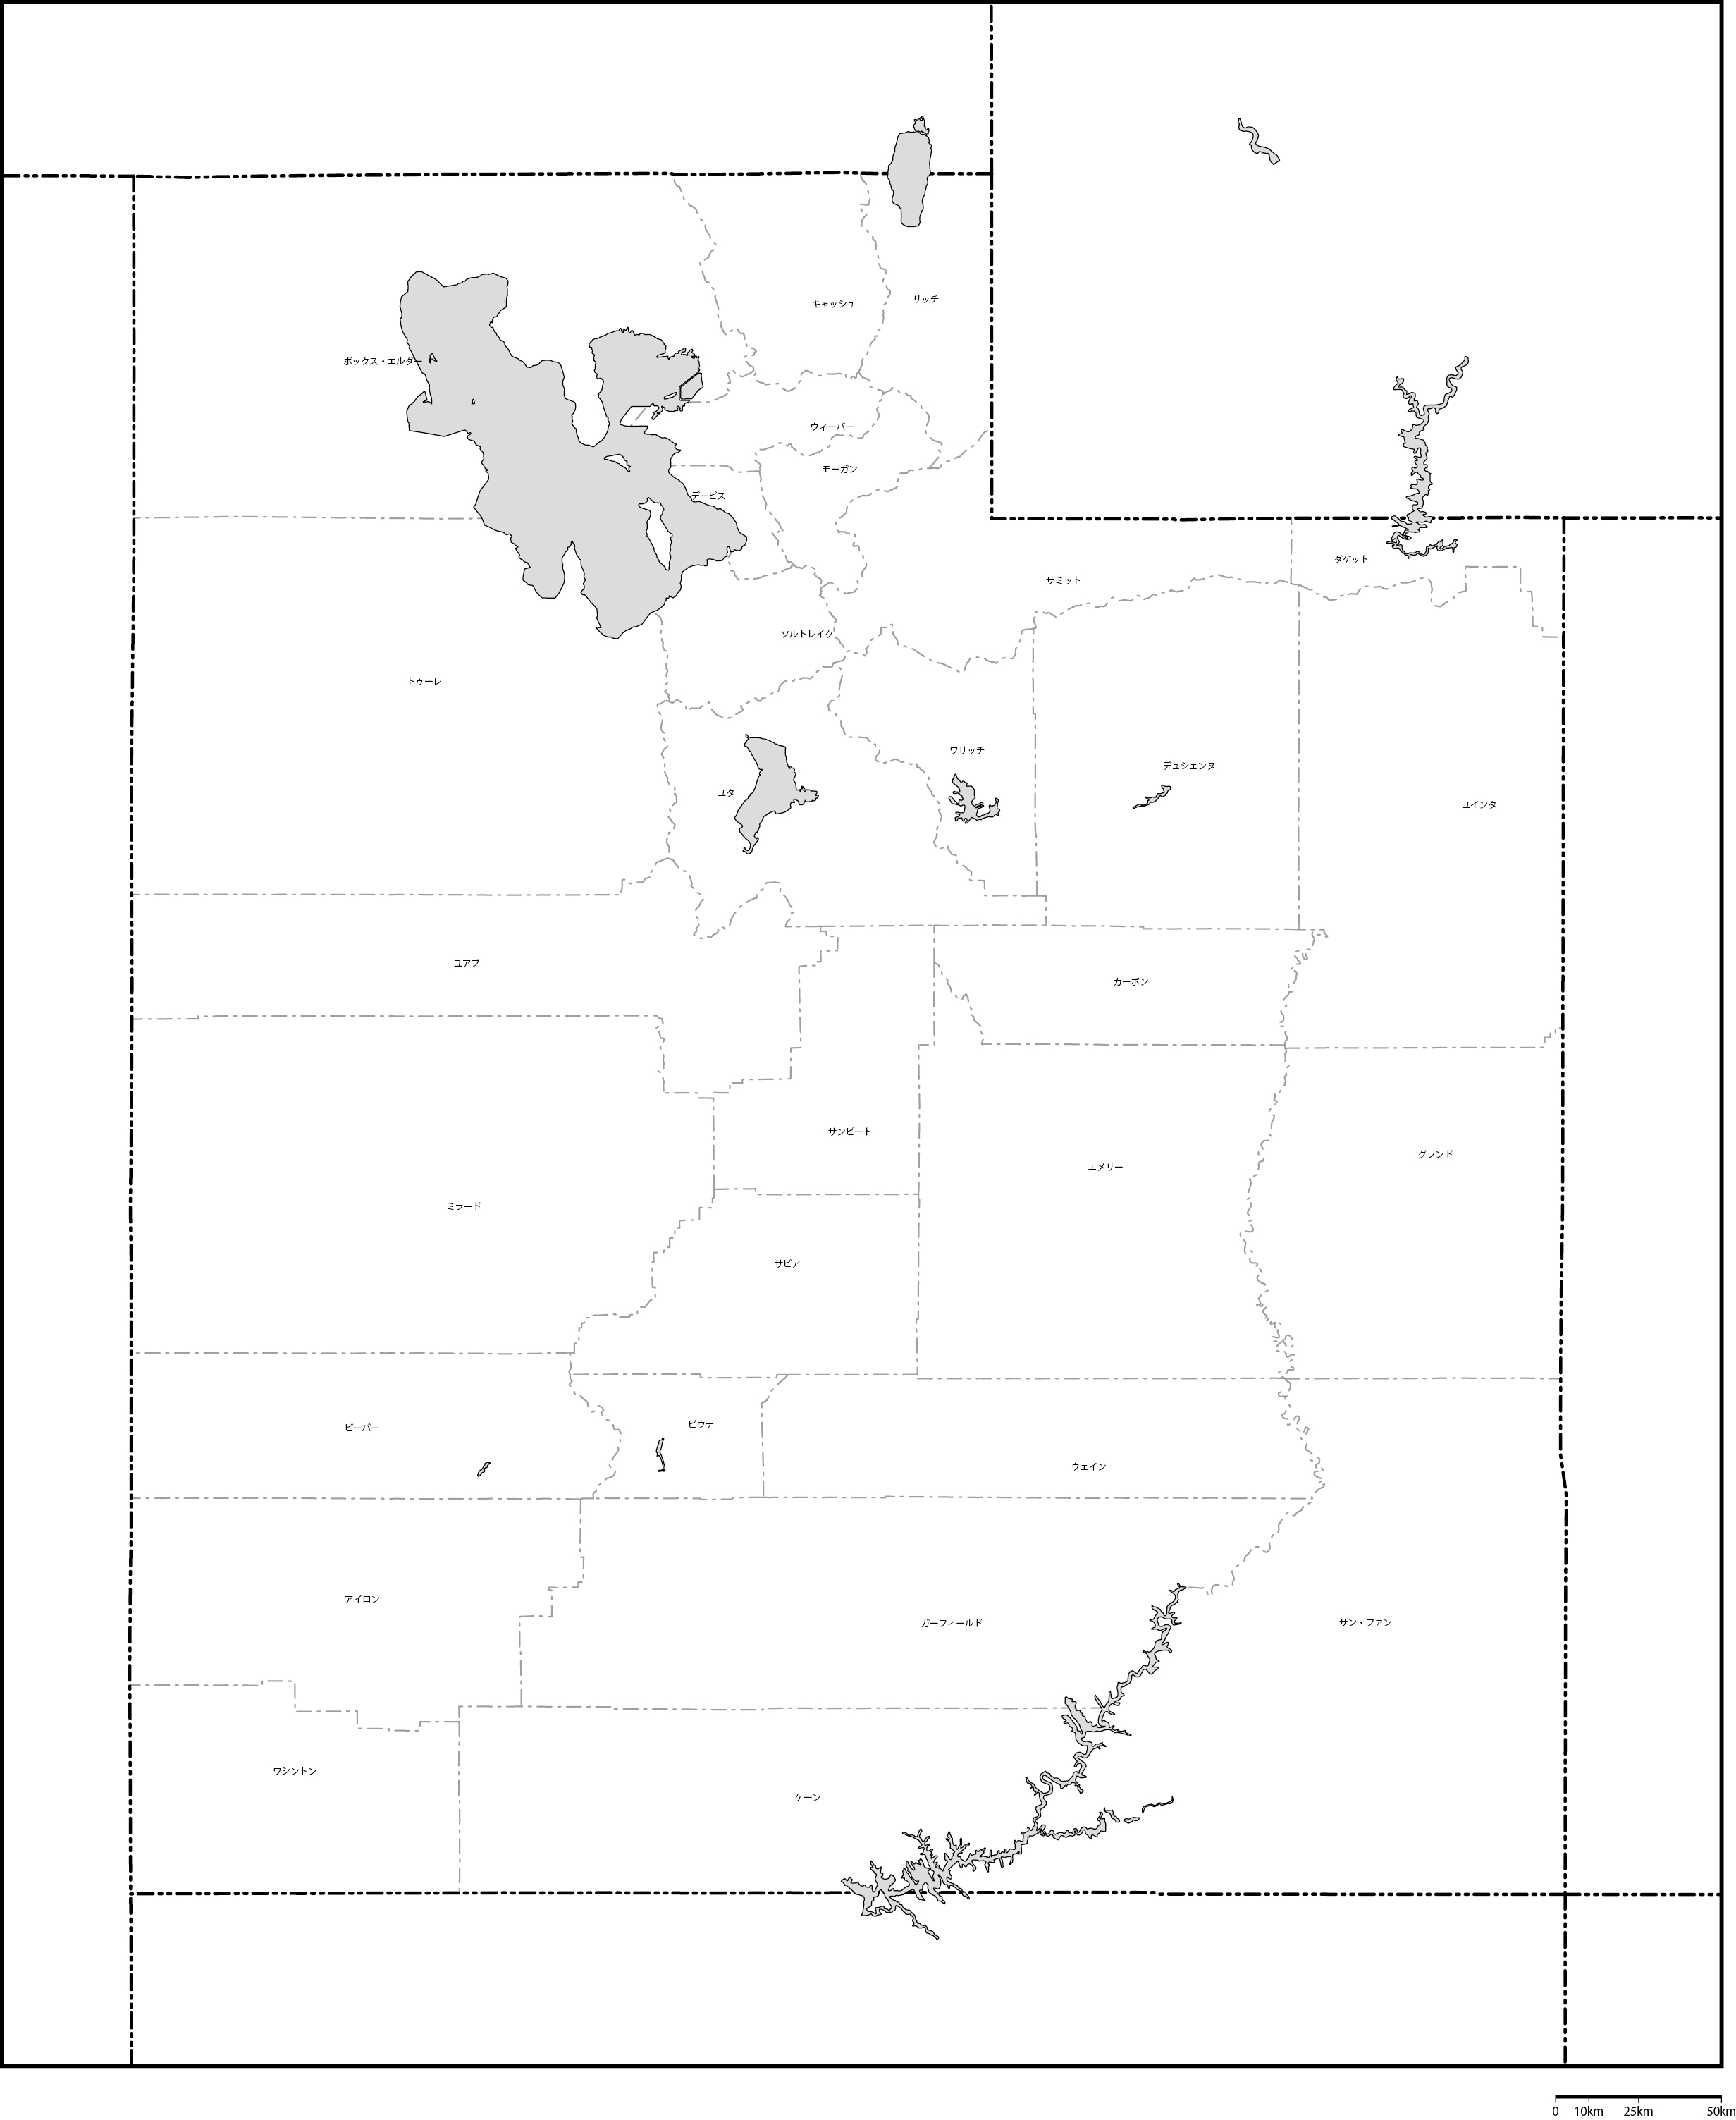 ユタ州郡分け地図郡名あり(日本語)フリーデータの画像